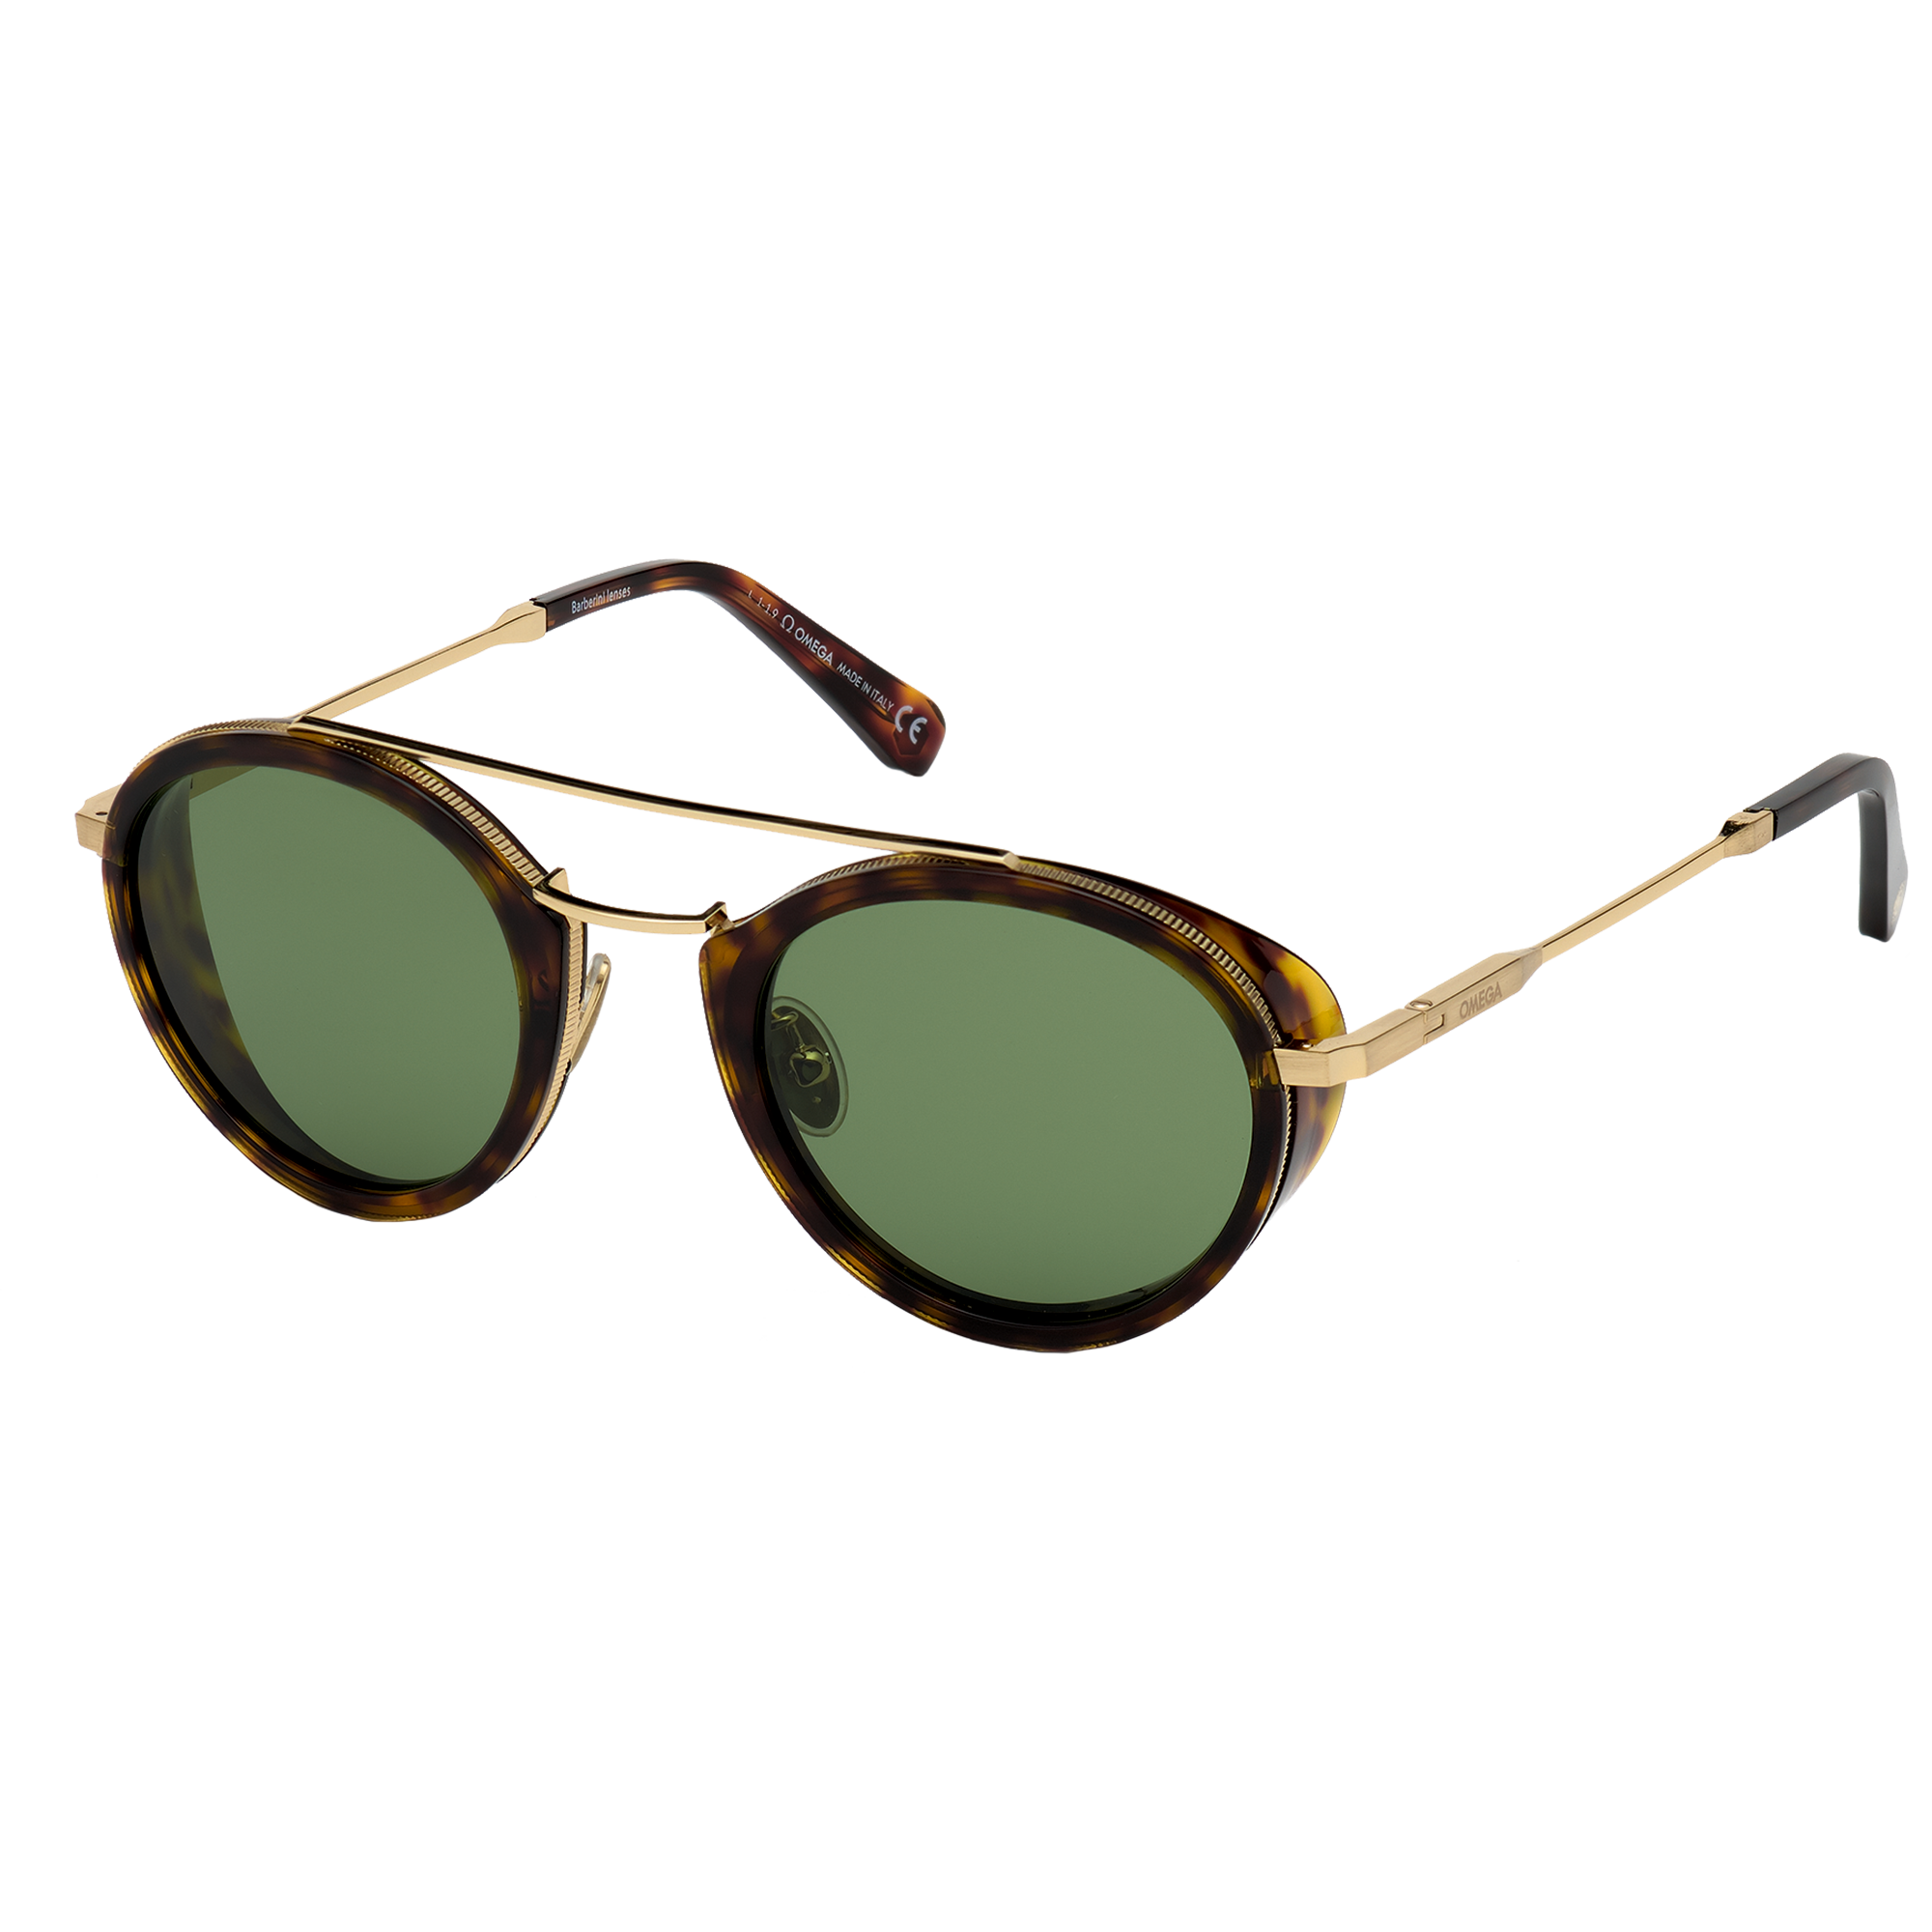 Солнцезащитные очки - Круглая форма, ОЧКИ ДЛЯ МУЖЧИН И ЖЕНЩИН - OM0021-H5252N